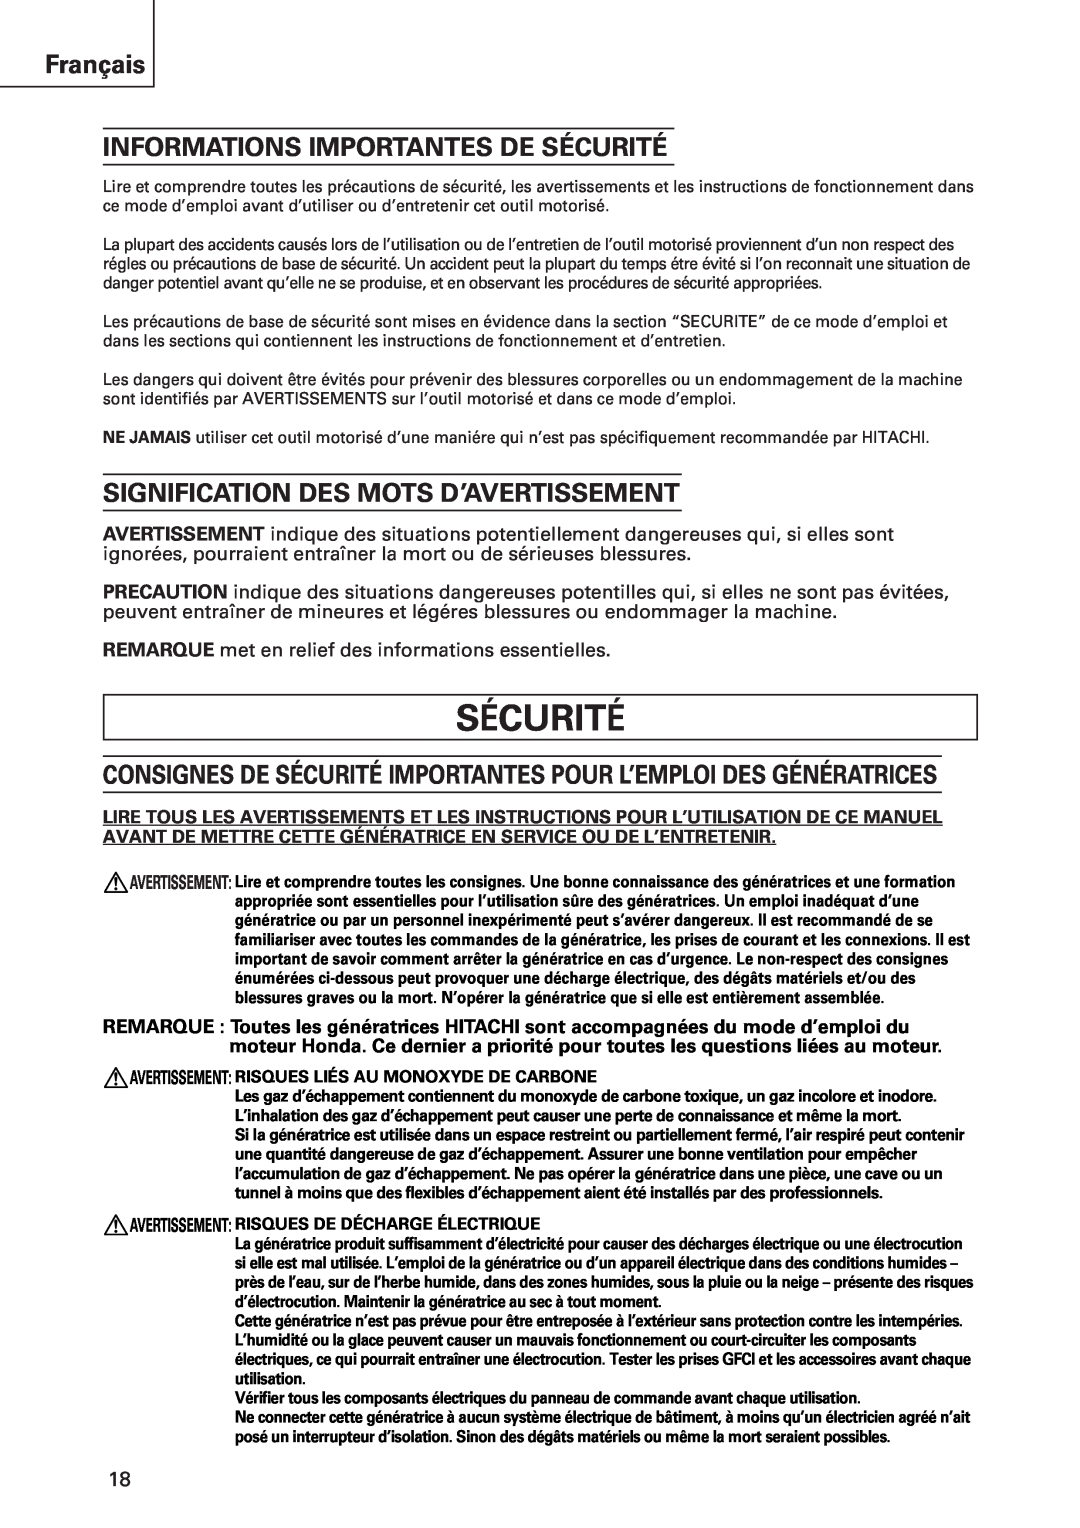 Hitachi E43 Sécurité, Français INFORMATIONS IMPORTANTES DE SÉCURITÉ, Signification Des Mots D’Avertissement 